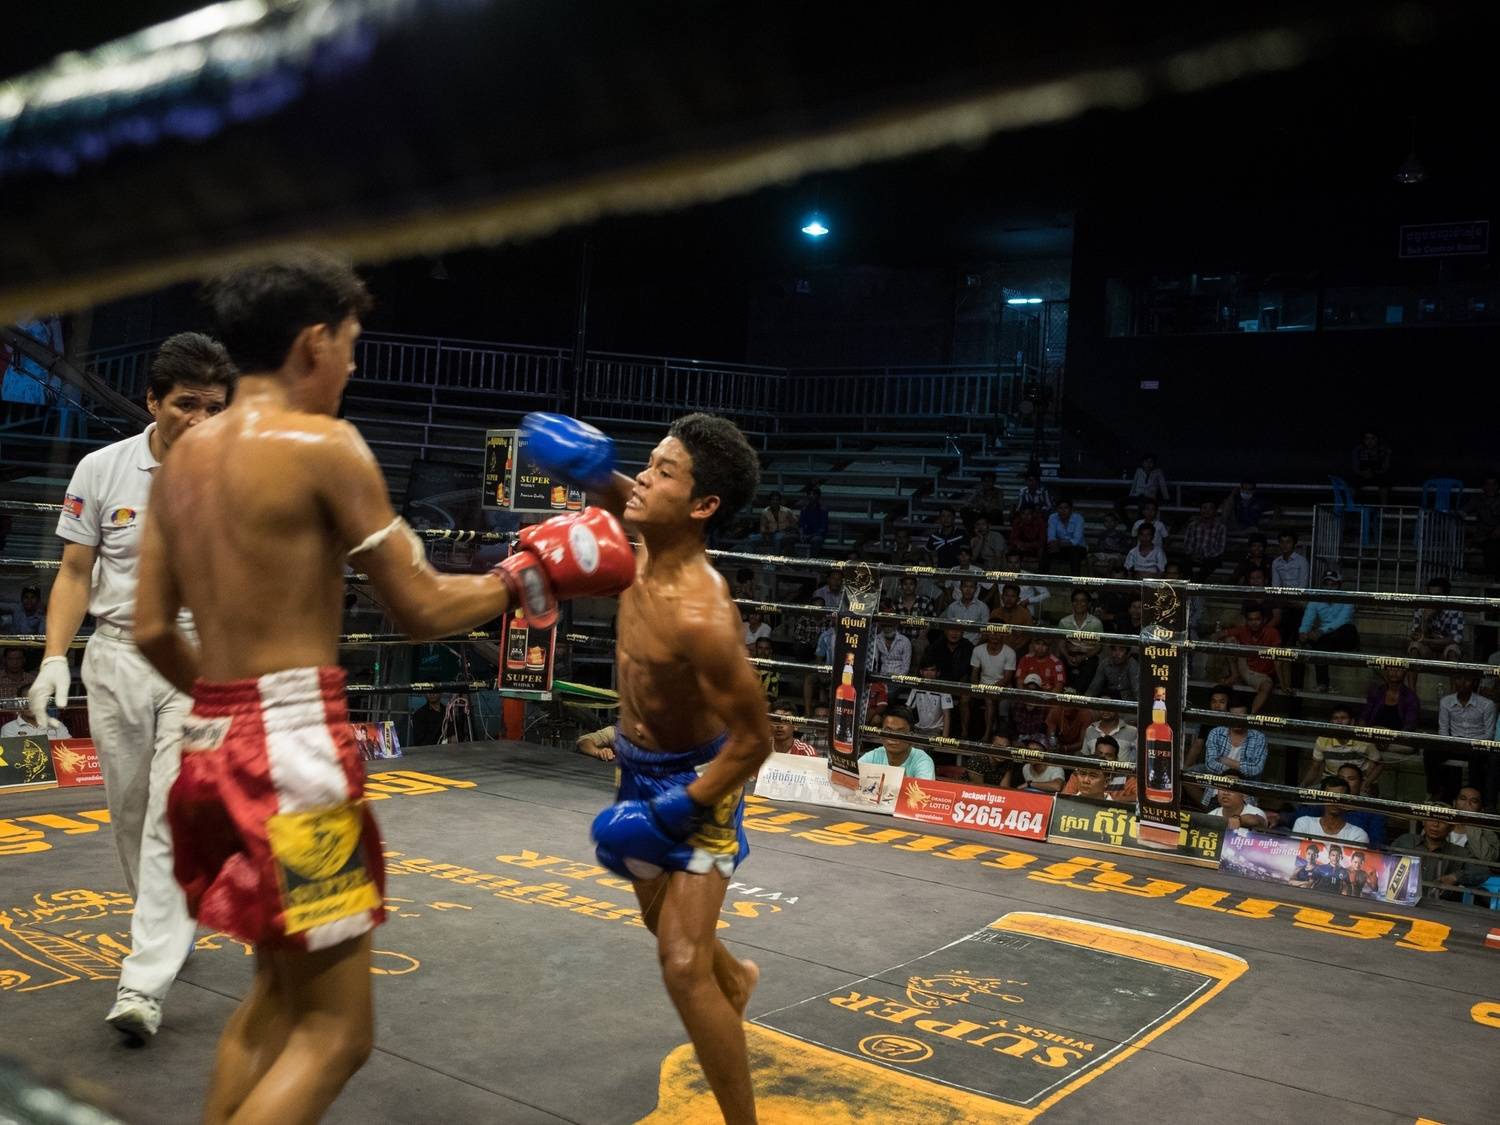 Спорт в камбодже - википедия